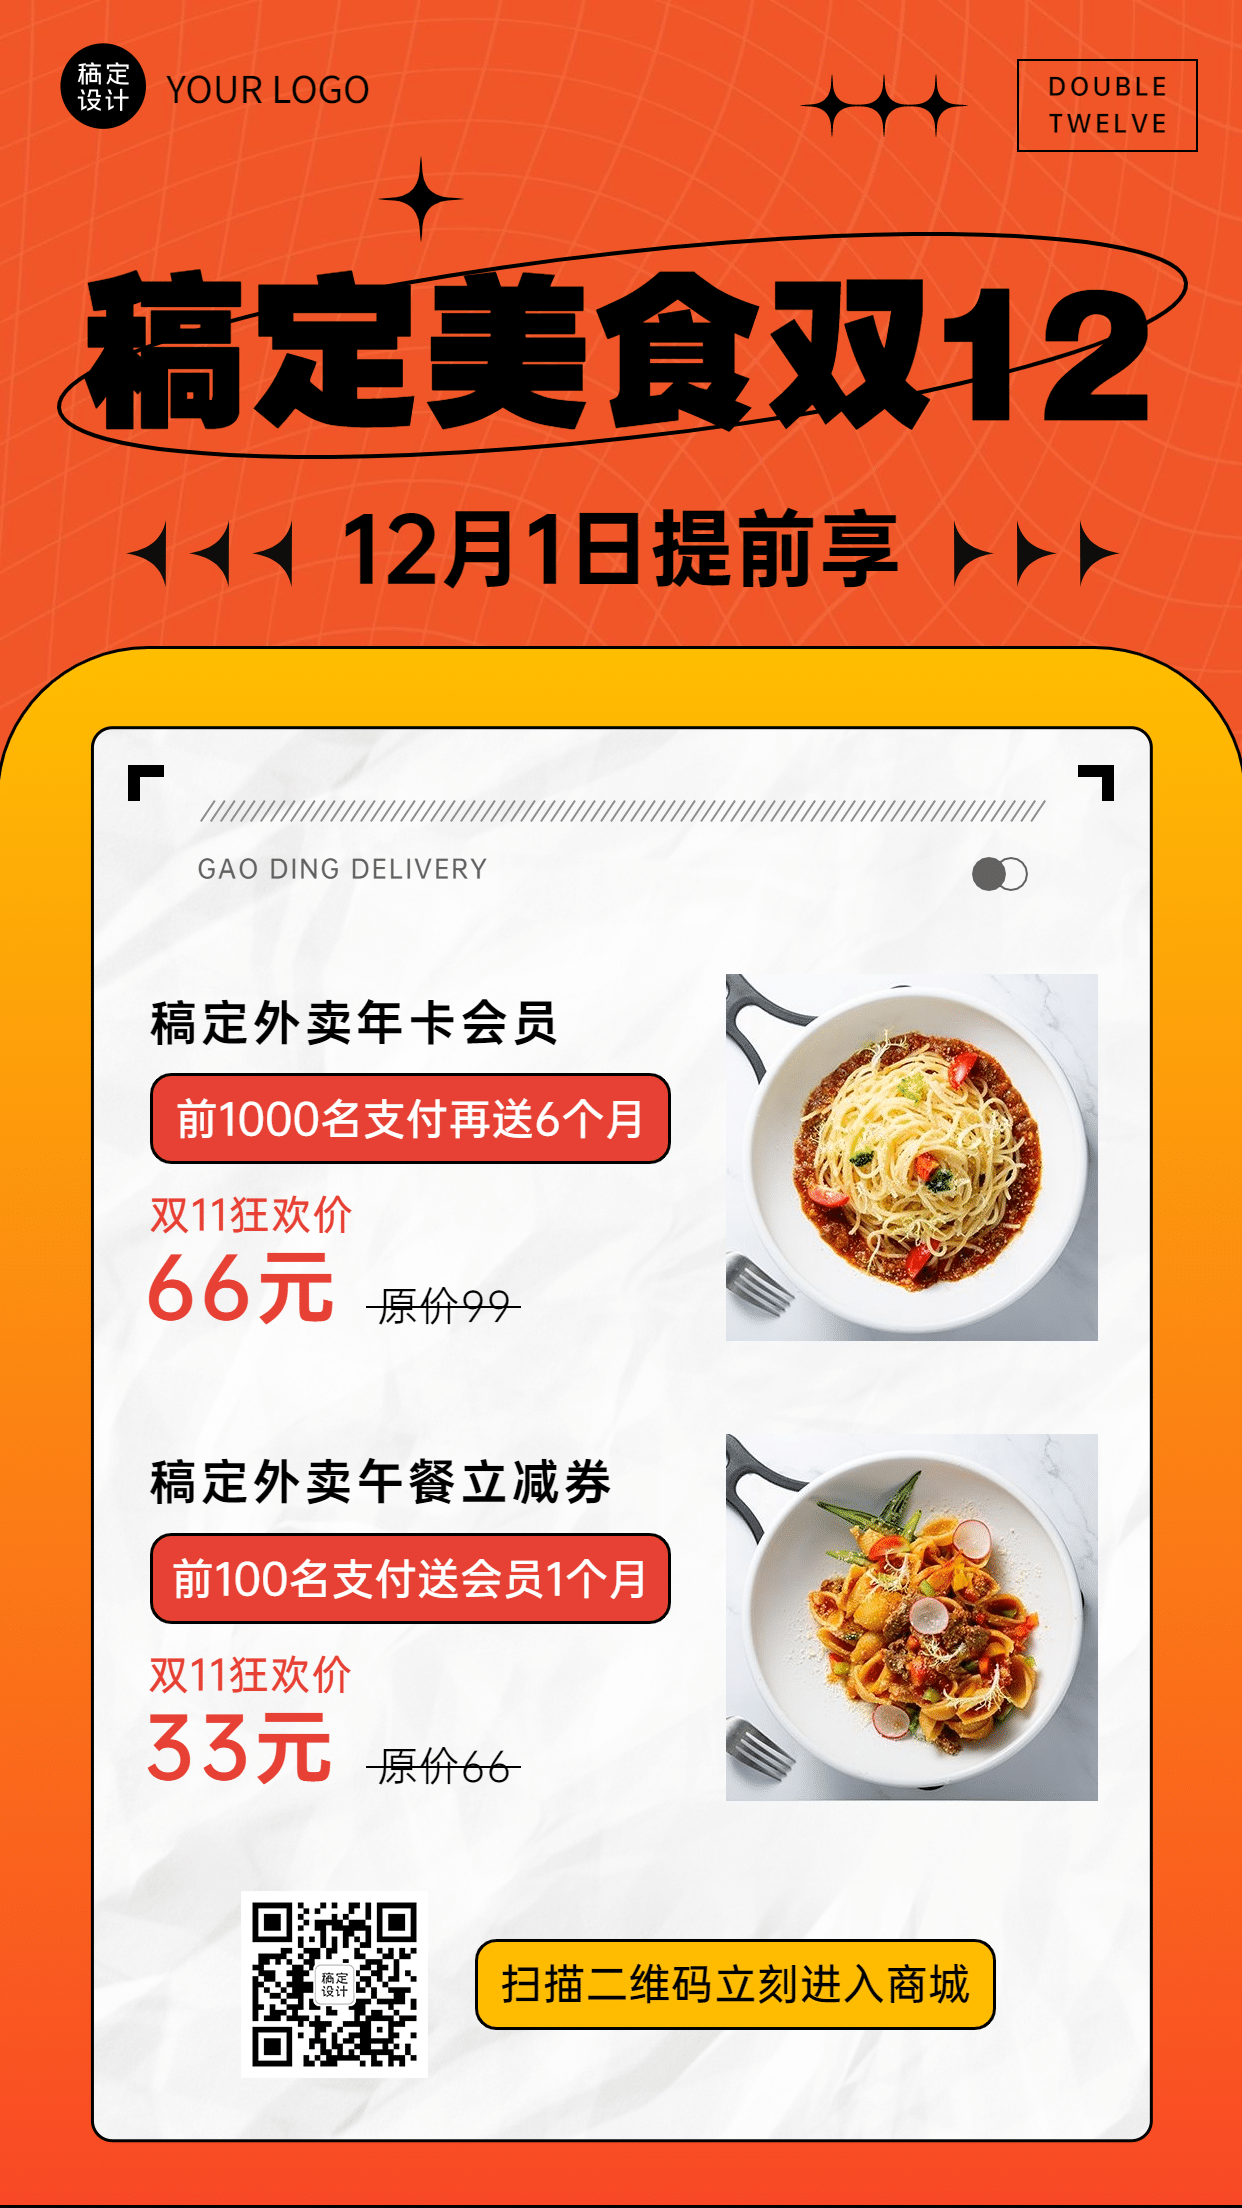 双十二餐饮美食活动营销喜庆海报预览效果